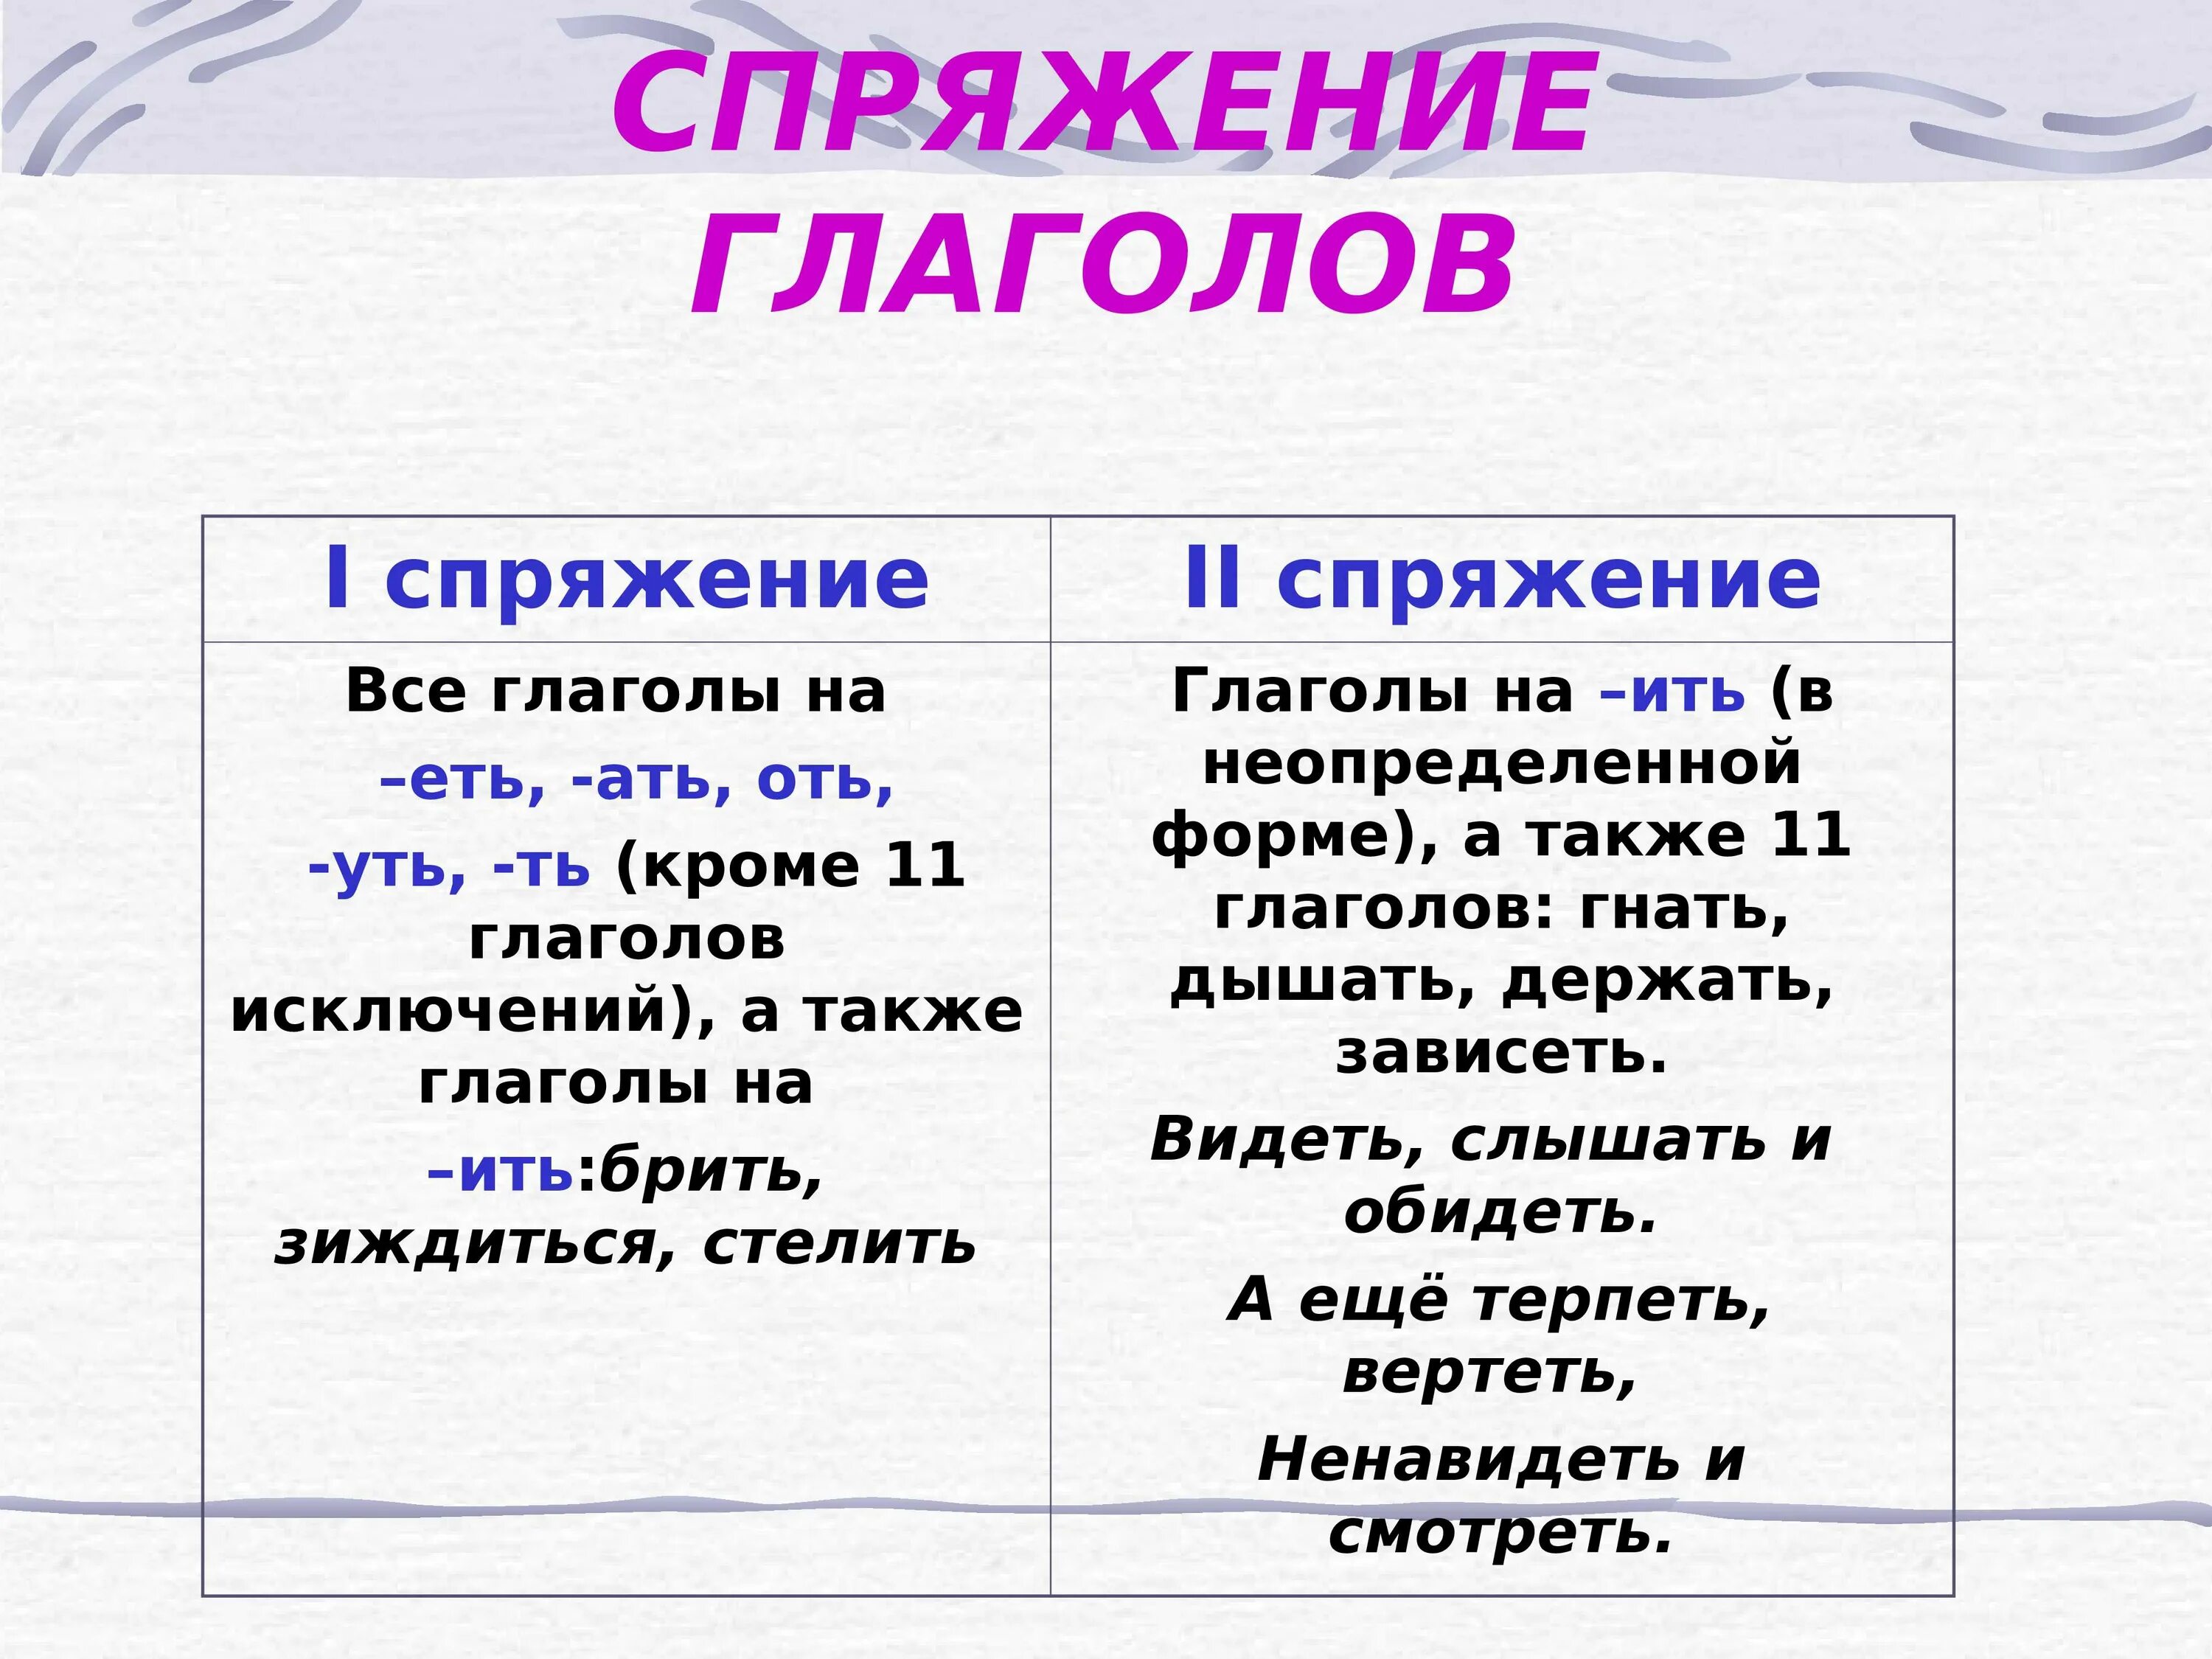 Спряжение глаголов таблица 6 класс по русскому. Как понять спряжение глаголов в русском языке 4 класс таблица. Как понять спряжение глаголов 6 класс. Спряжение глаголов правило таблица. Как понять спряжение глаголов в русском языке 4 класс.